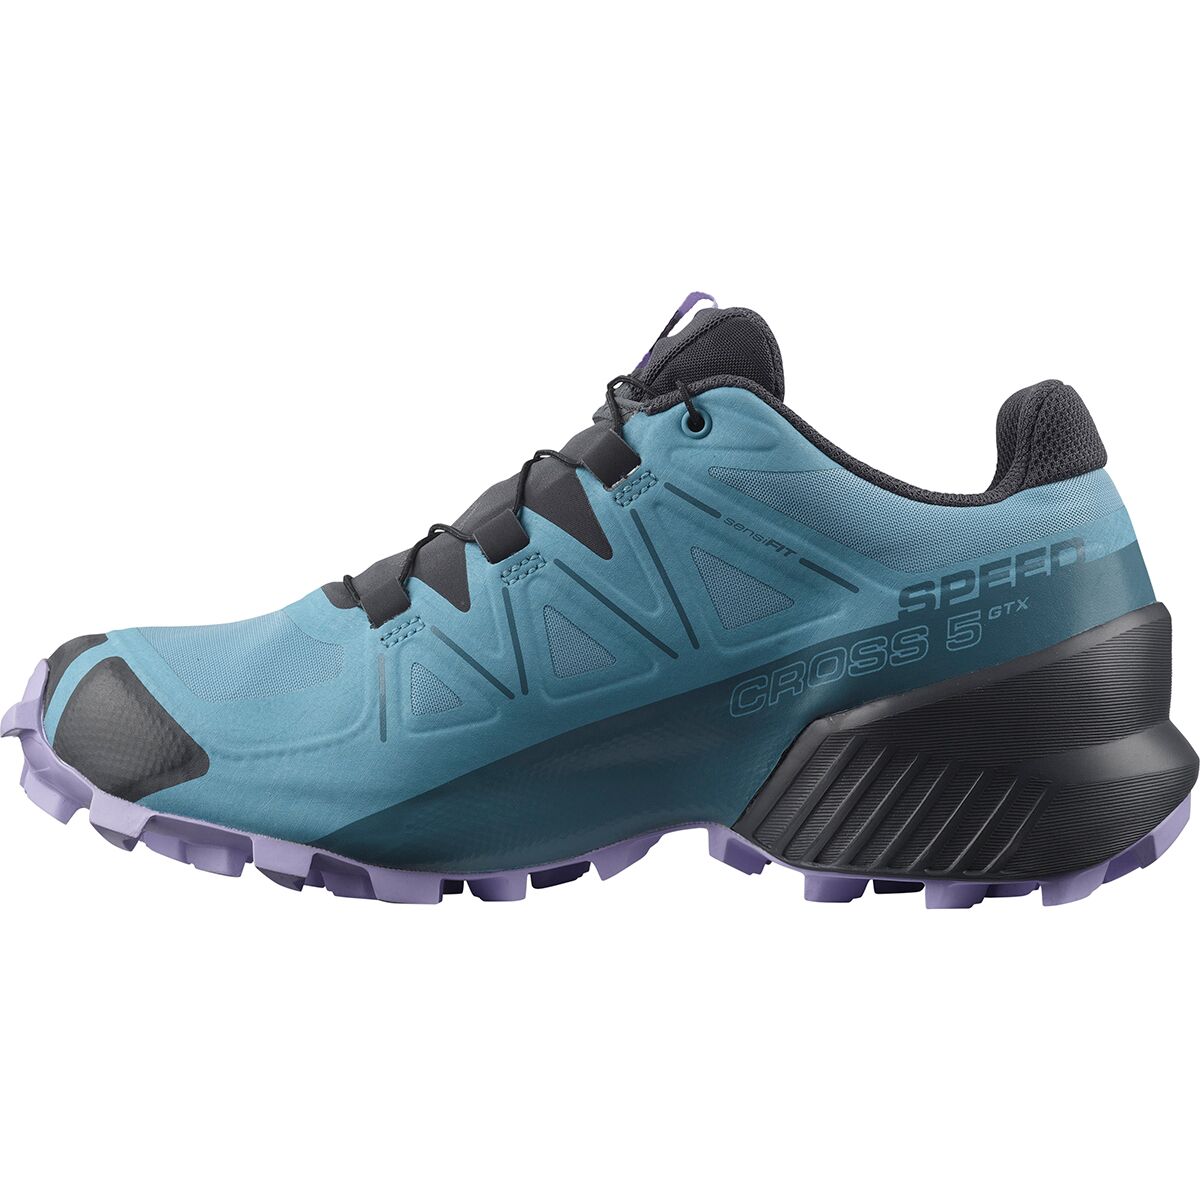 Salomon GTX Trail Running Shoe - Women's - Footwear